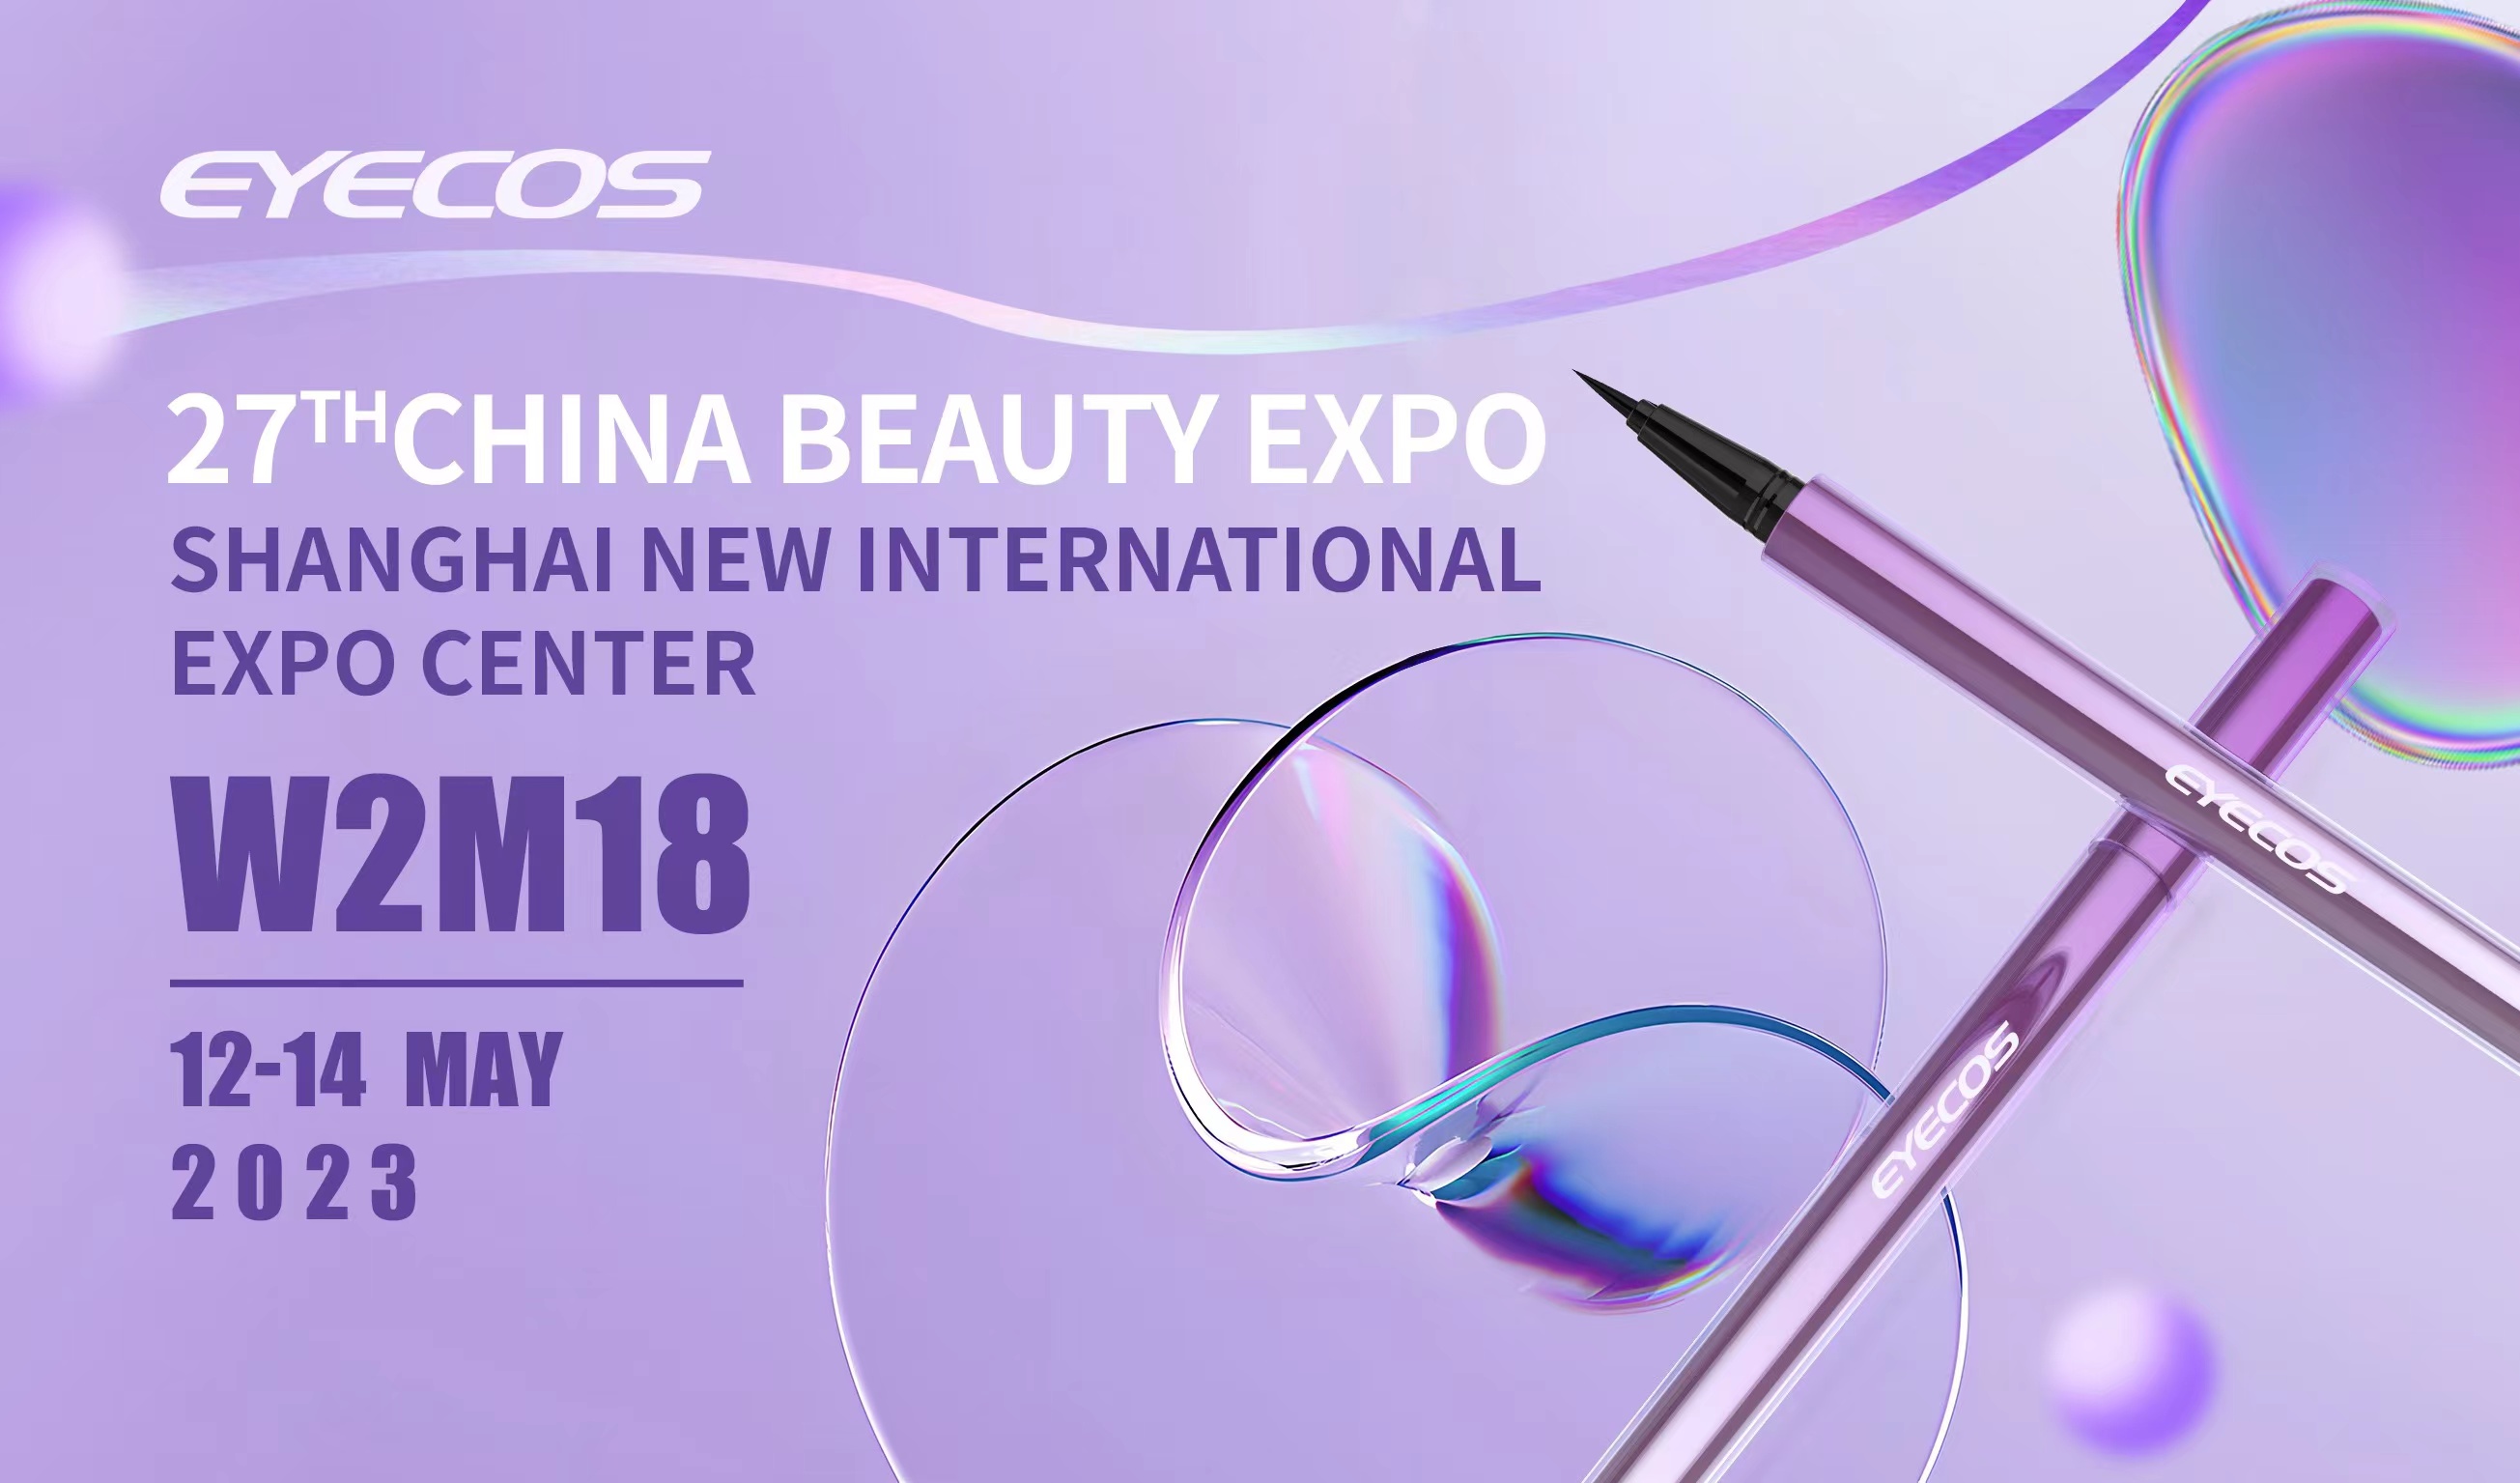 CBE China Beauty Expo, Shanghai, 12-14 May